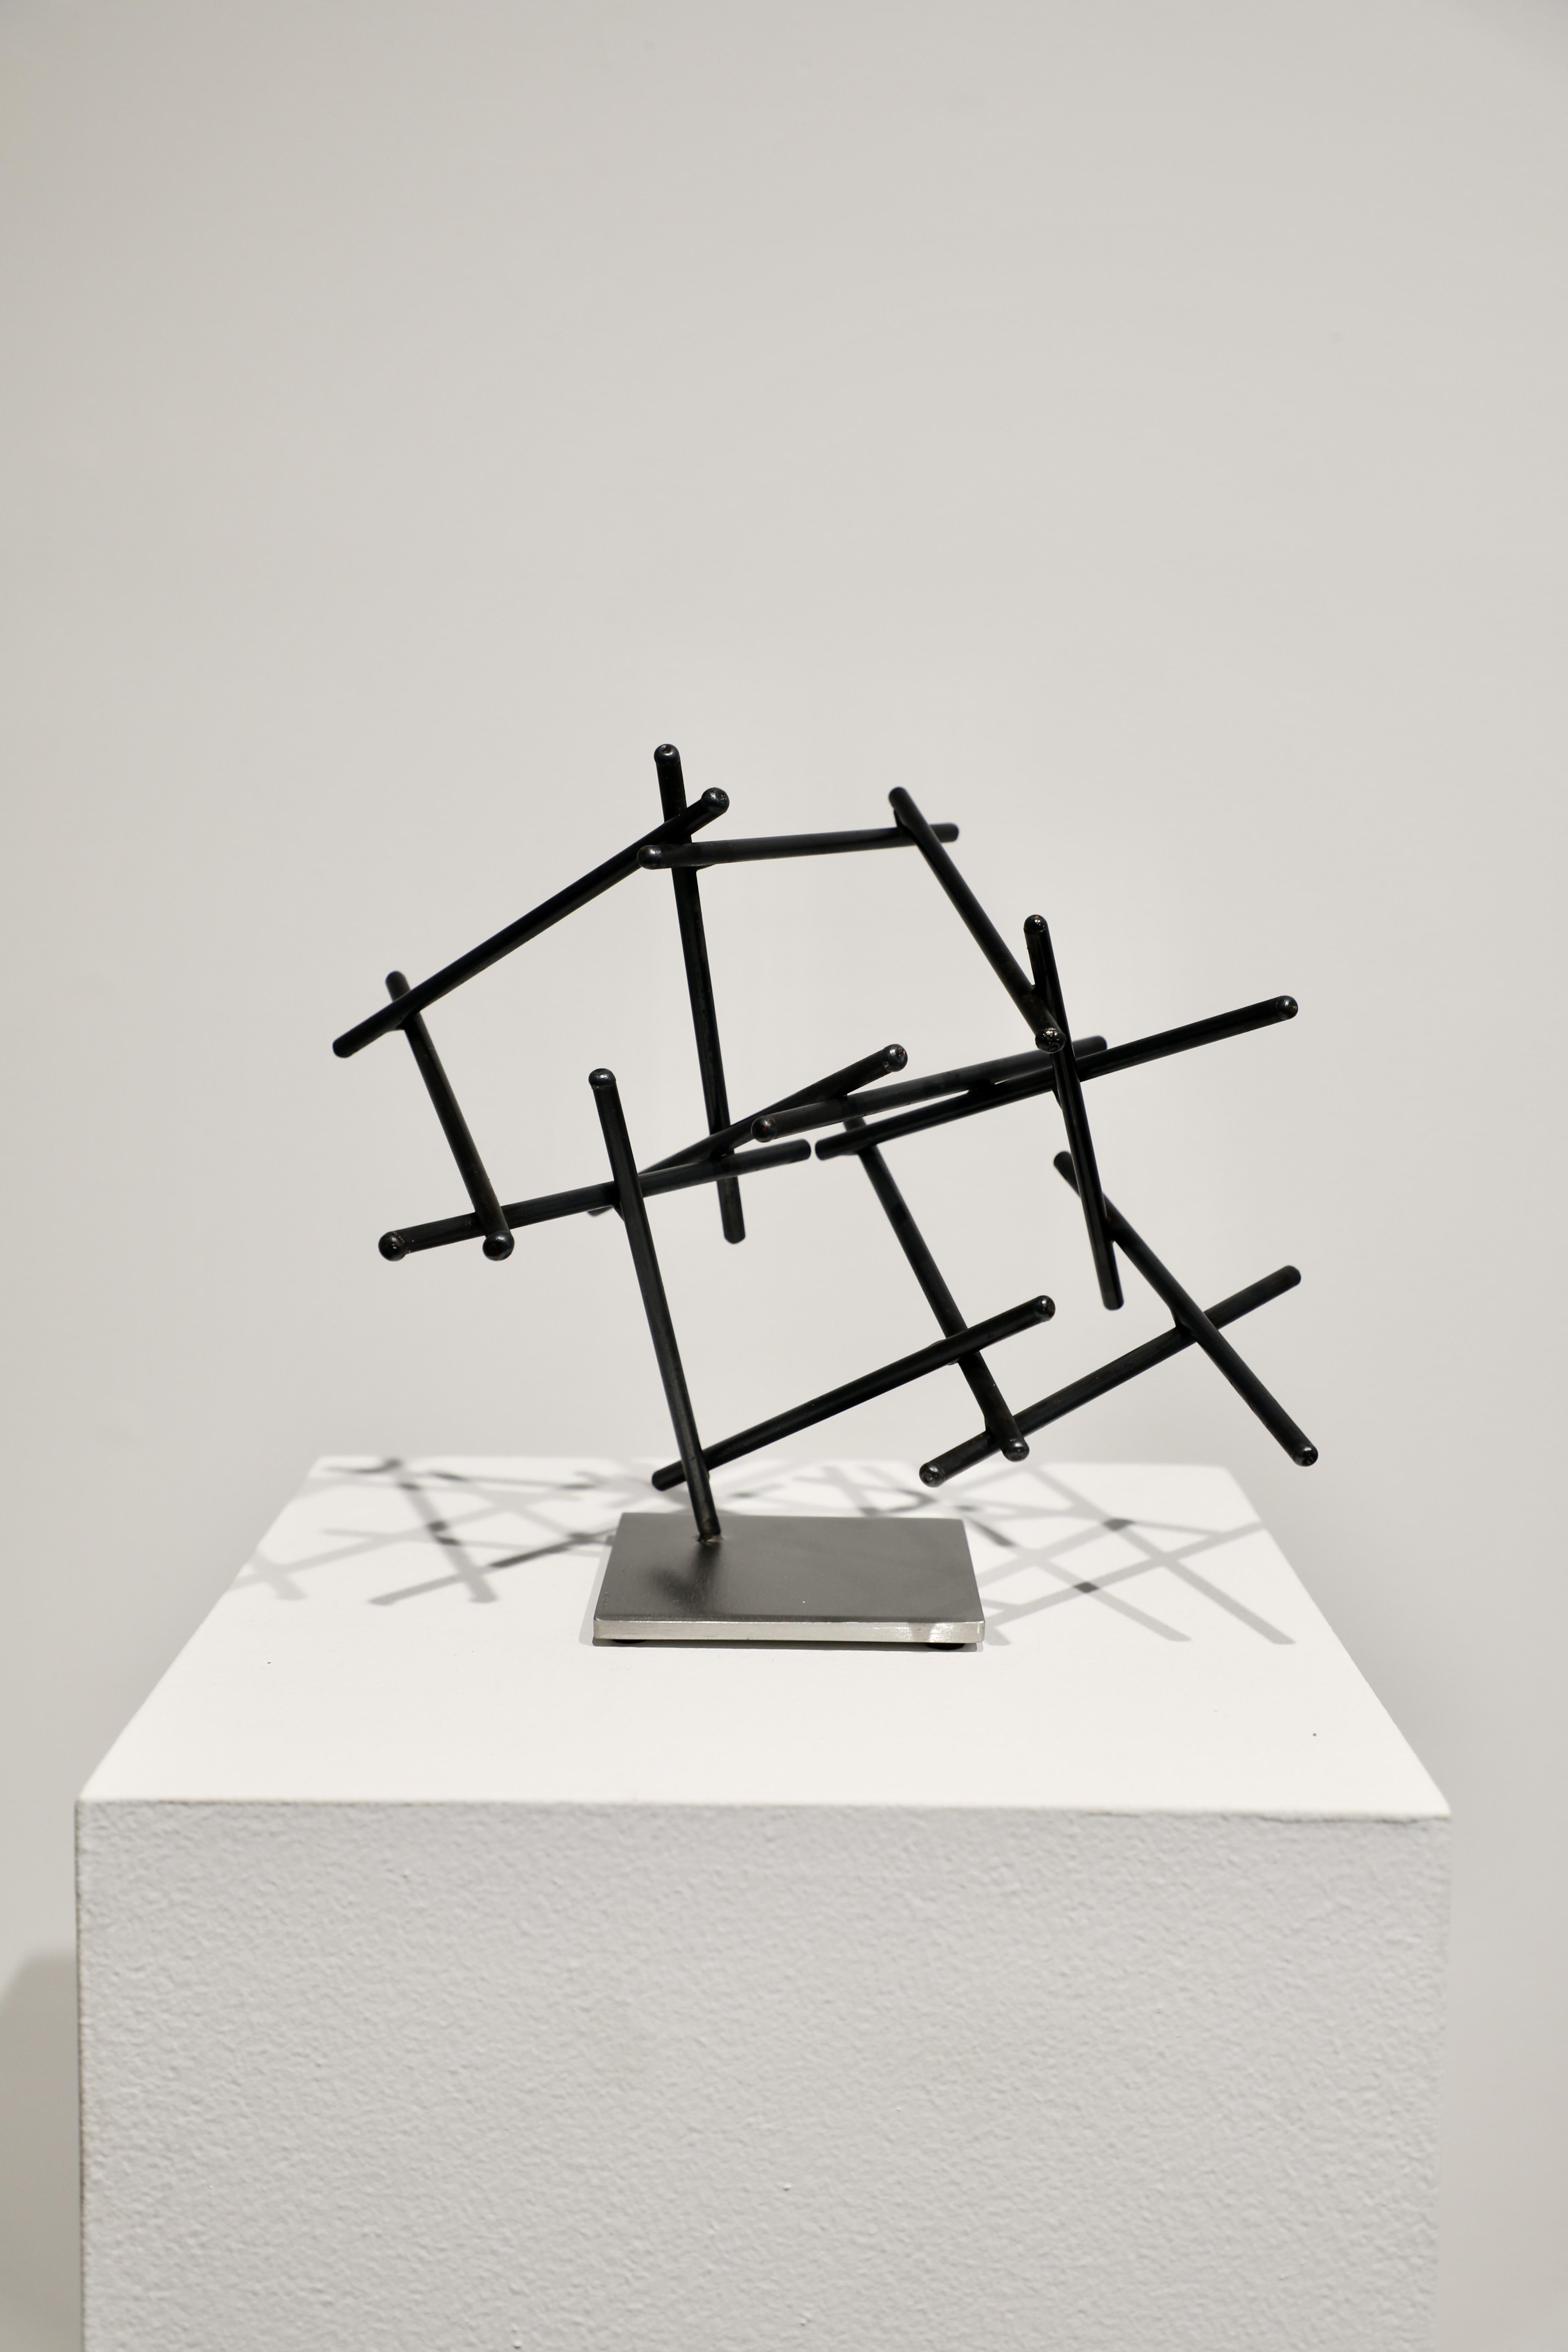 Matt Devine Abstract Sculpture – StudioStudie 22-12